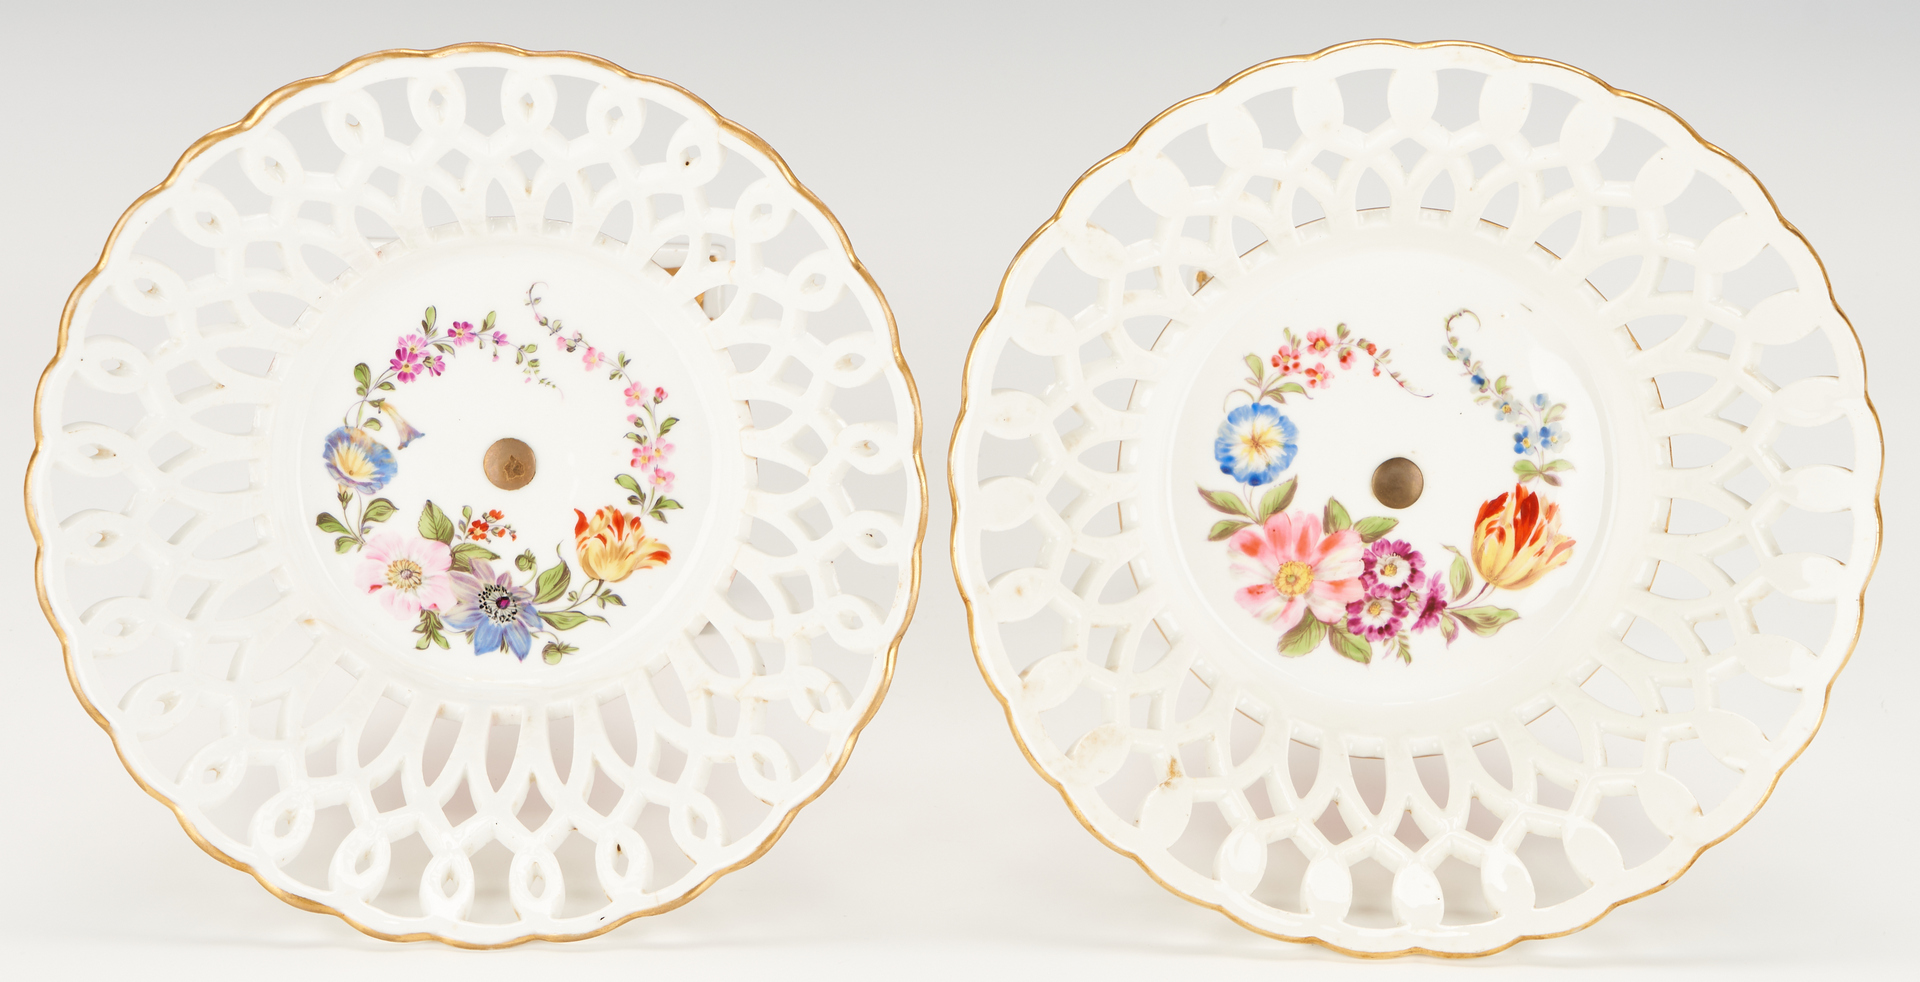 Lot 962: Pair French Porcelain Baskets & Old Paris Vase, 3 items